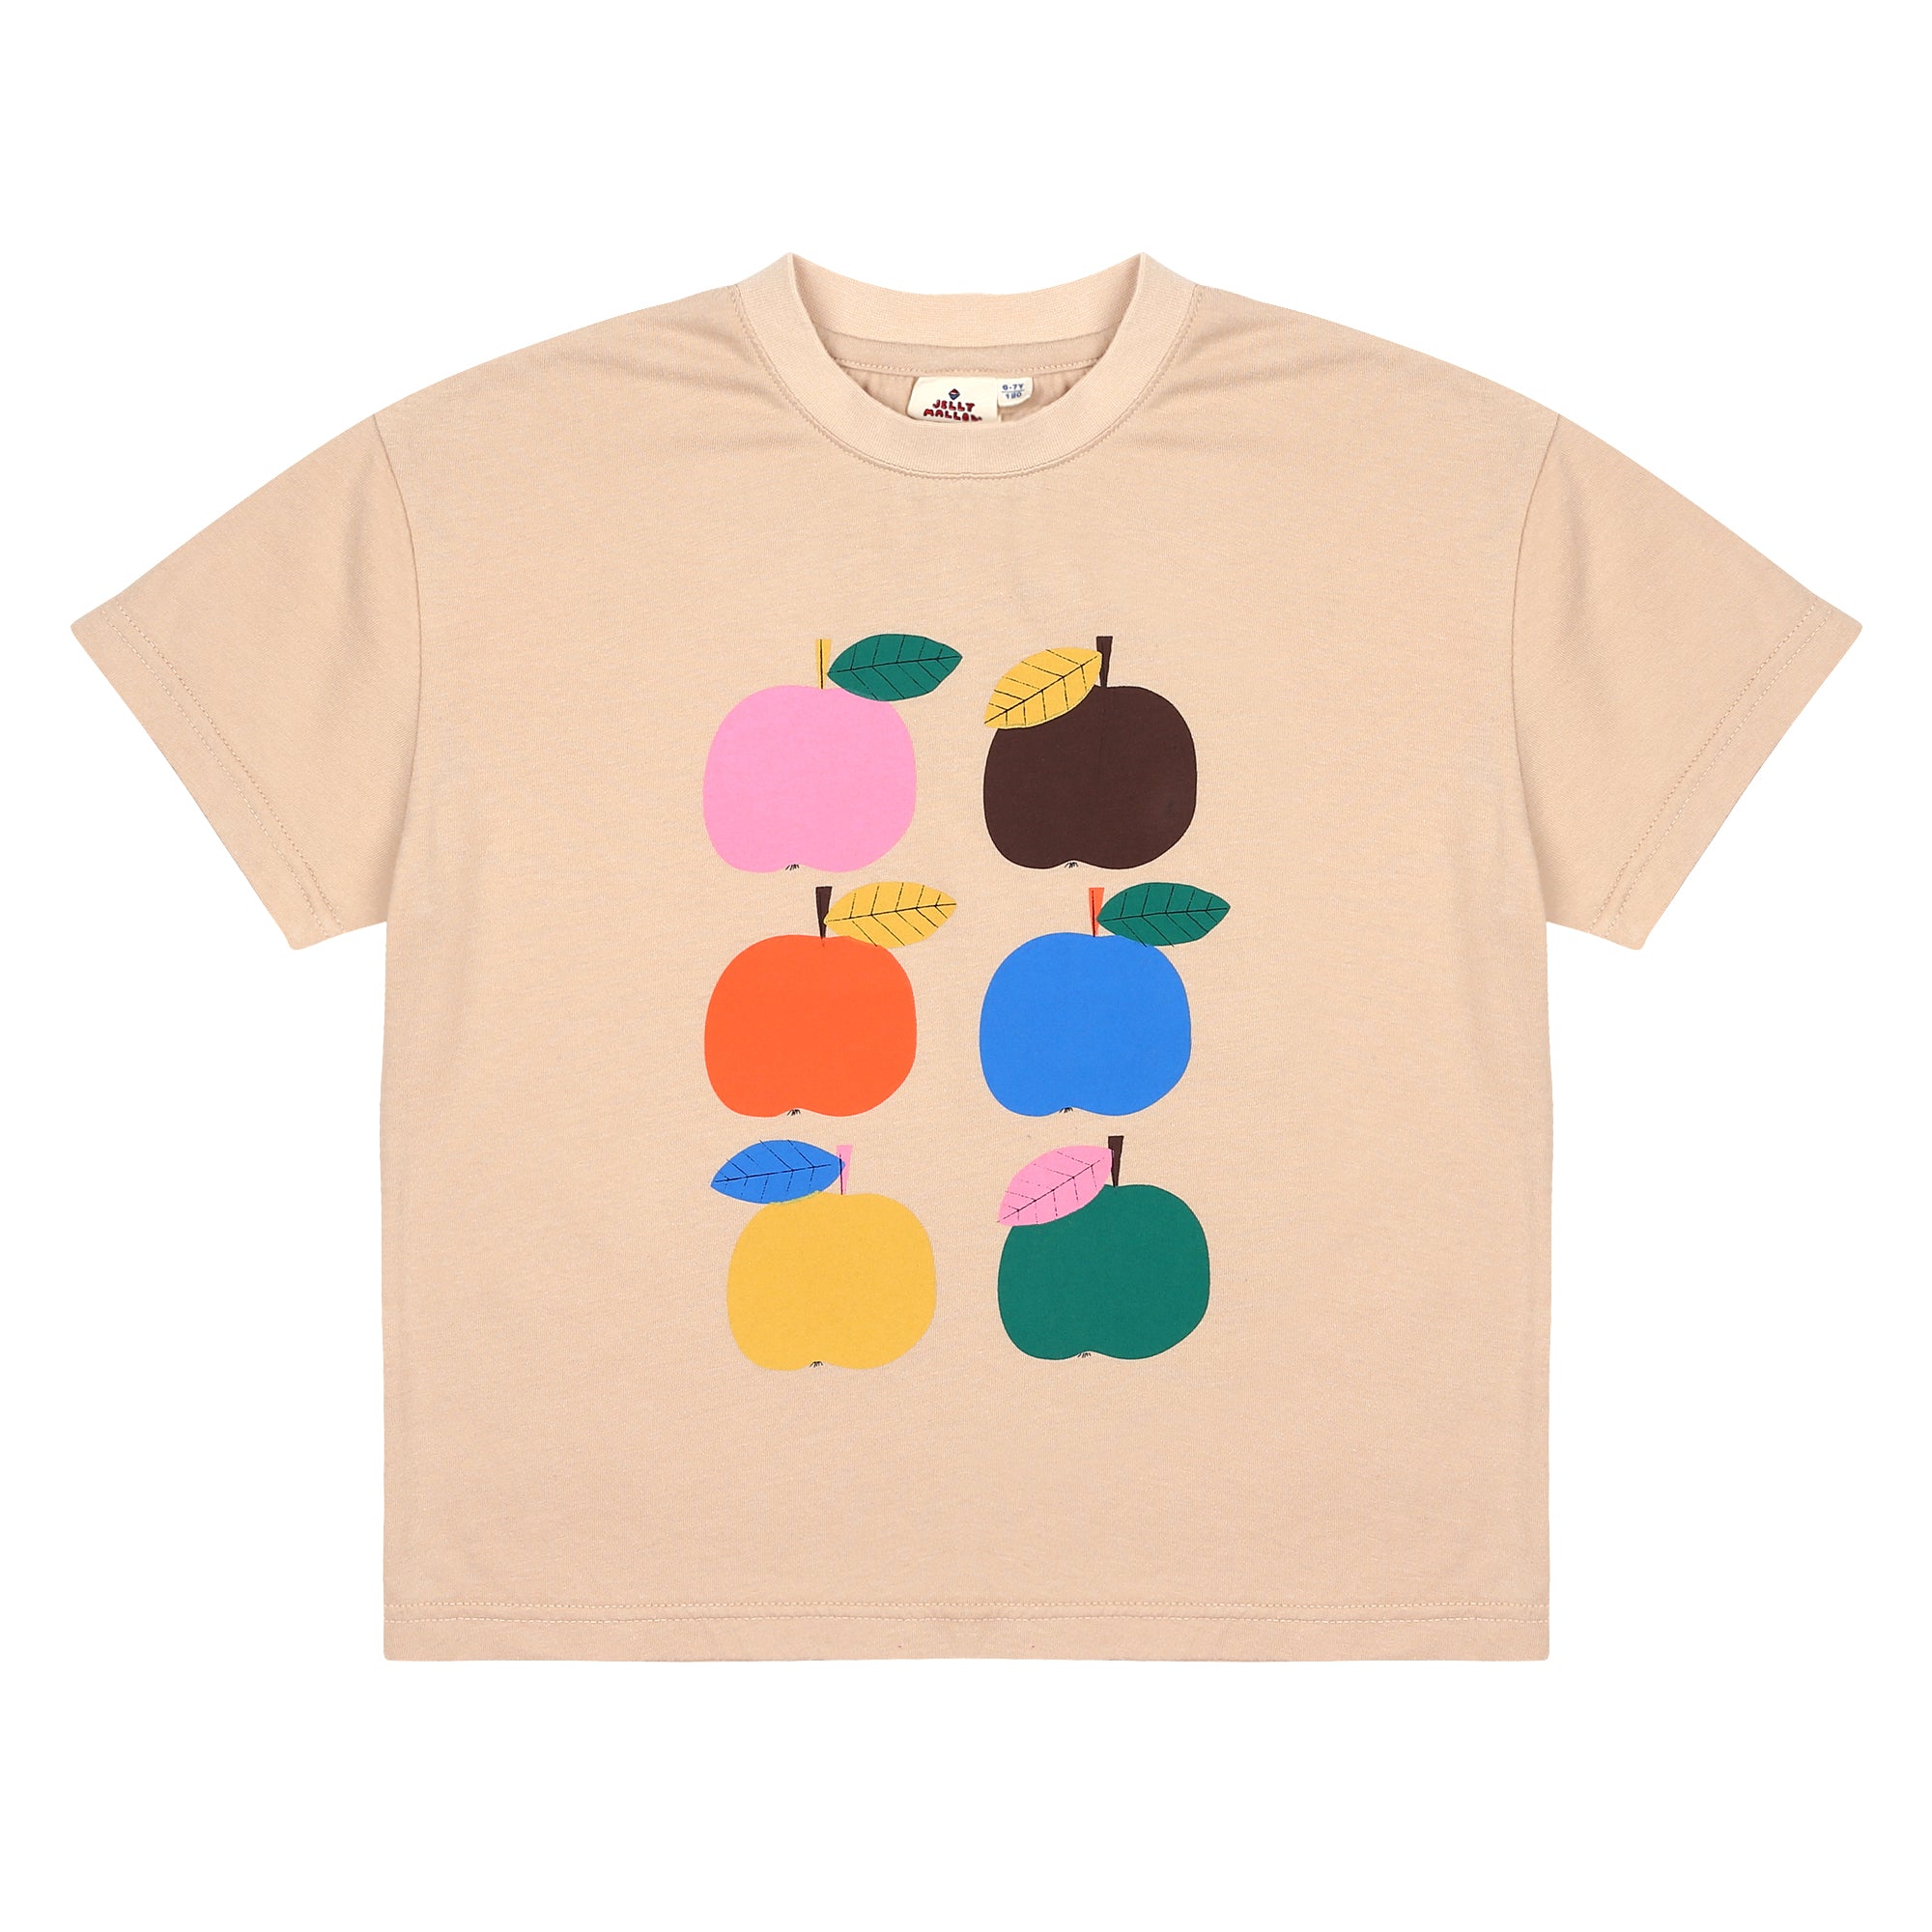 Colorful Apple T-shirt (2 colors)